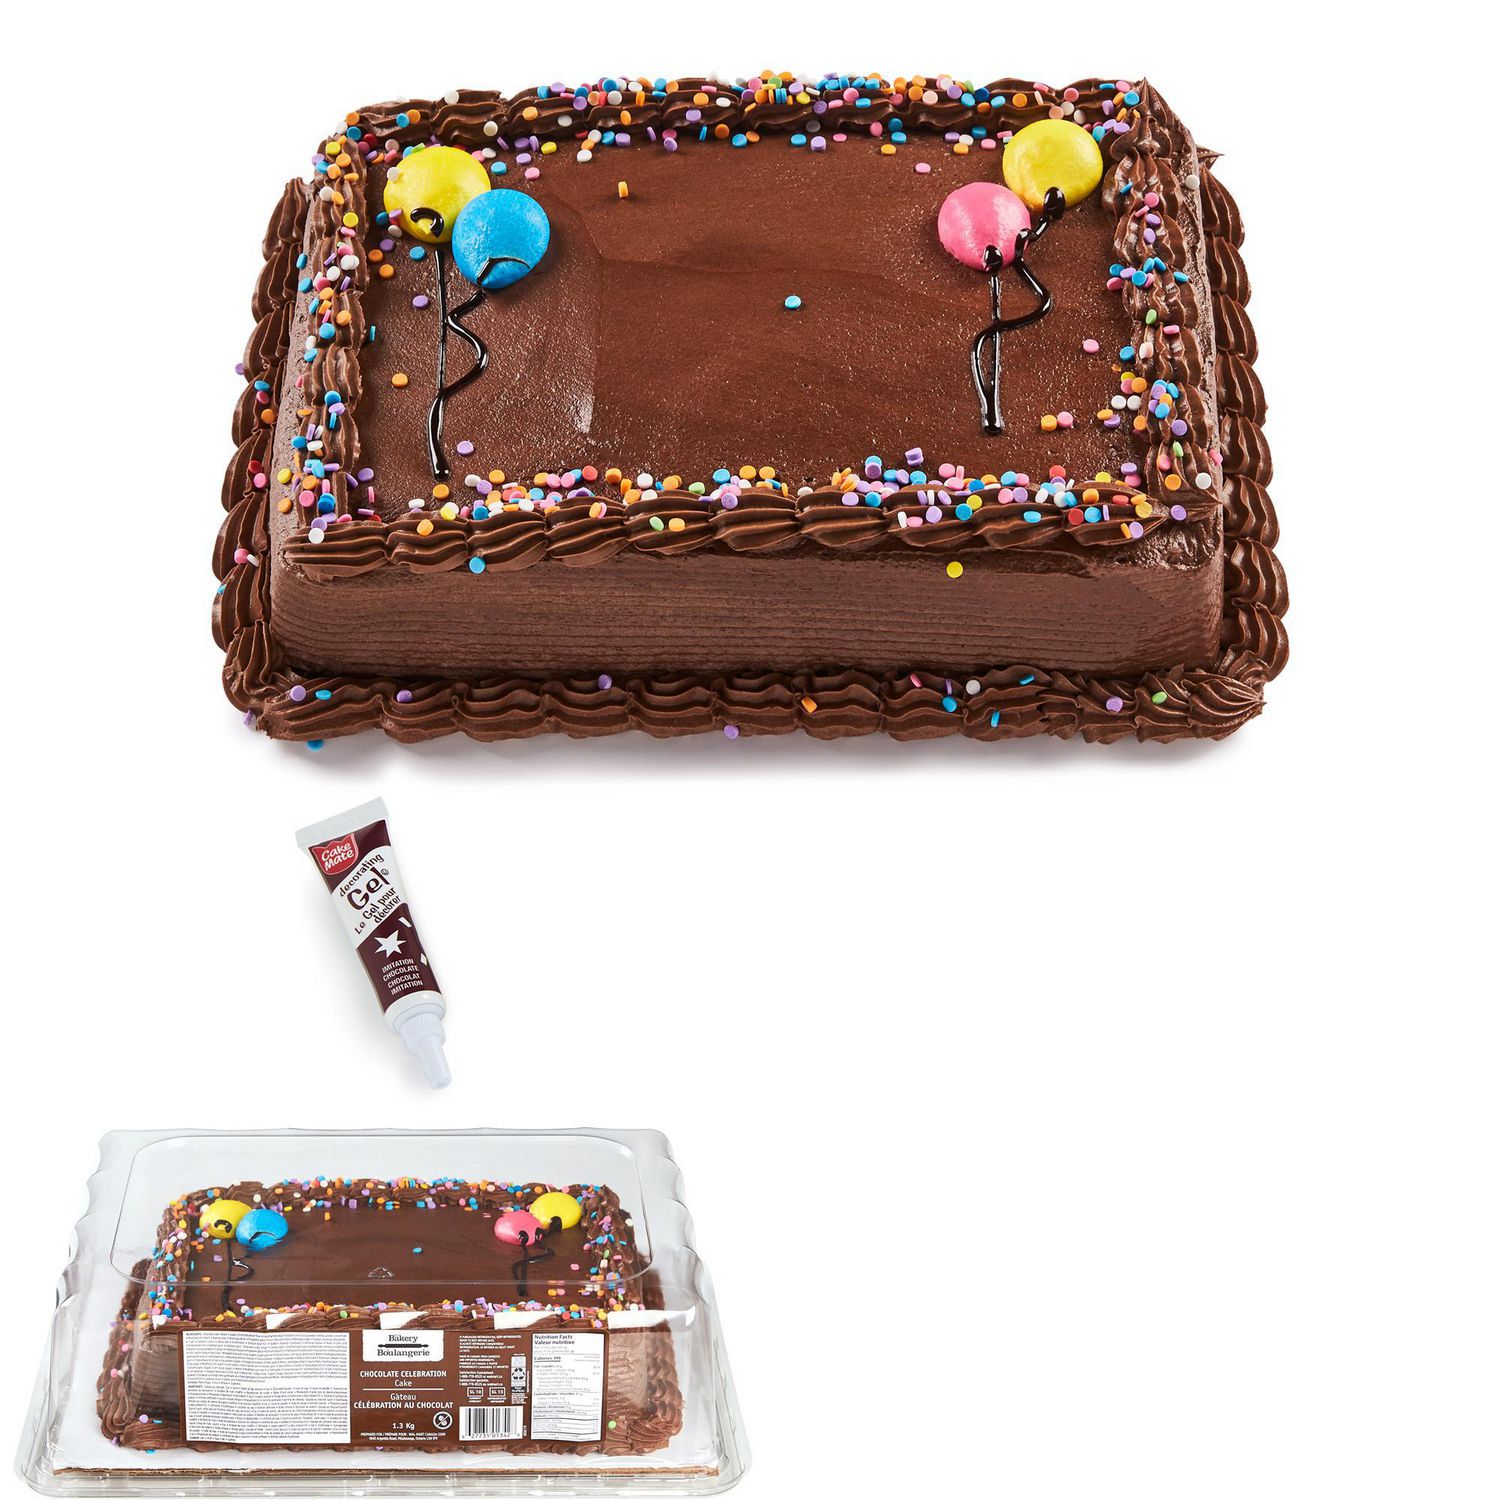 The Bakery Chocolate Celebration Cake